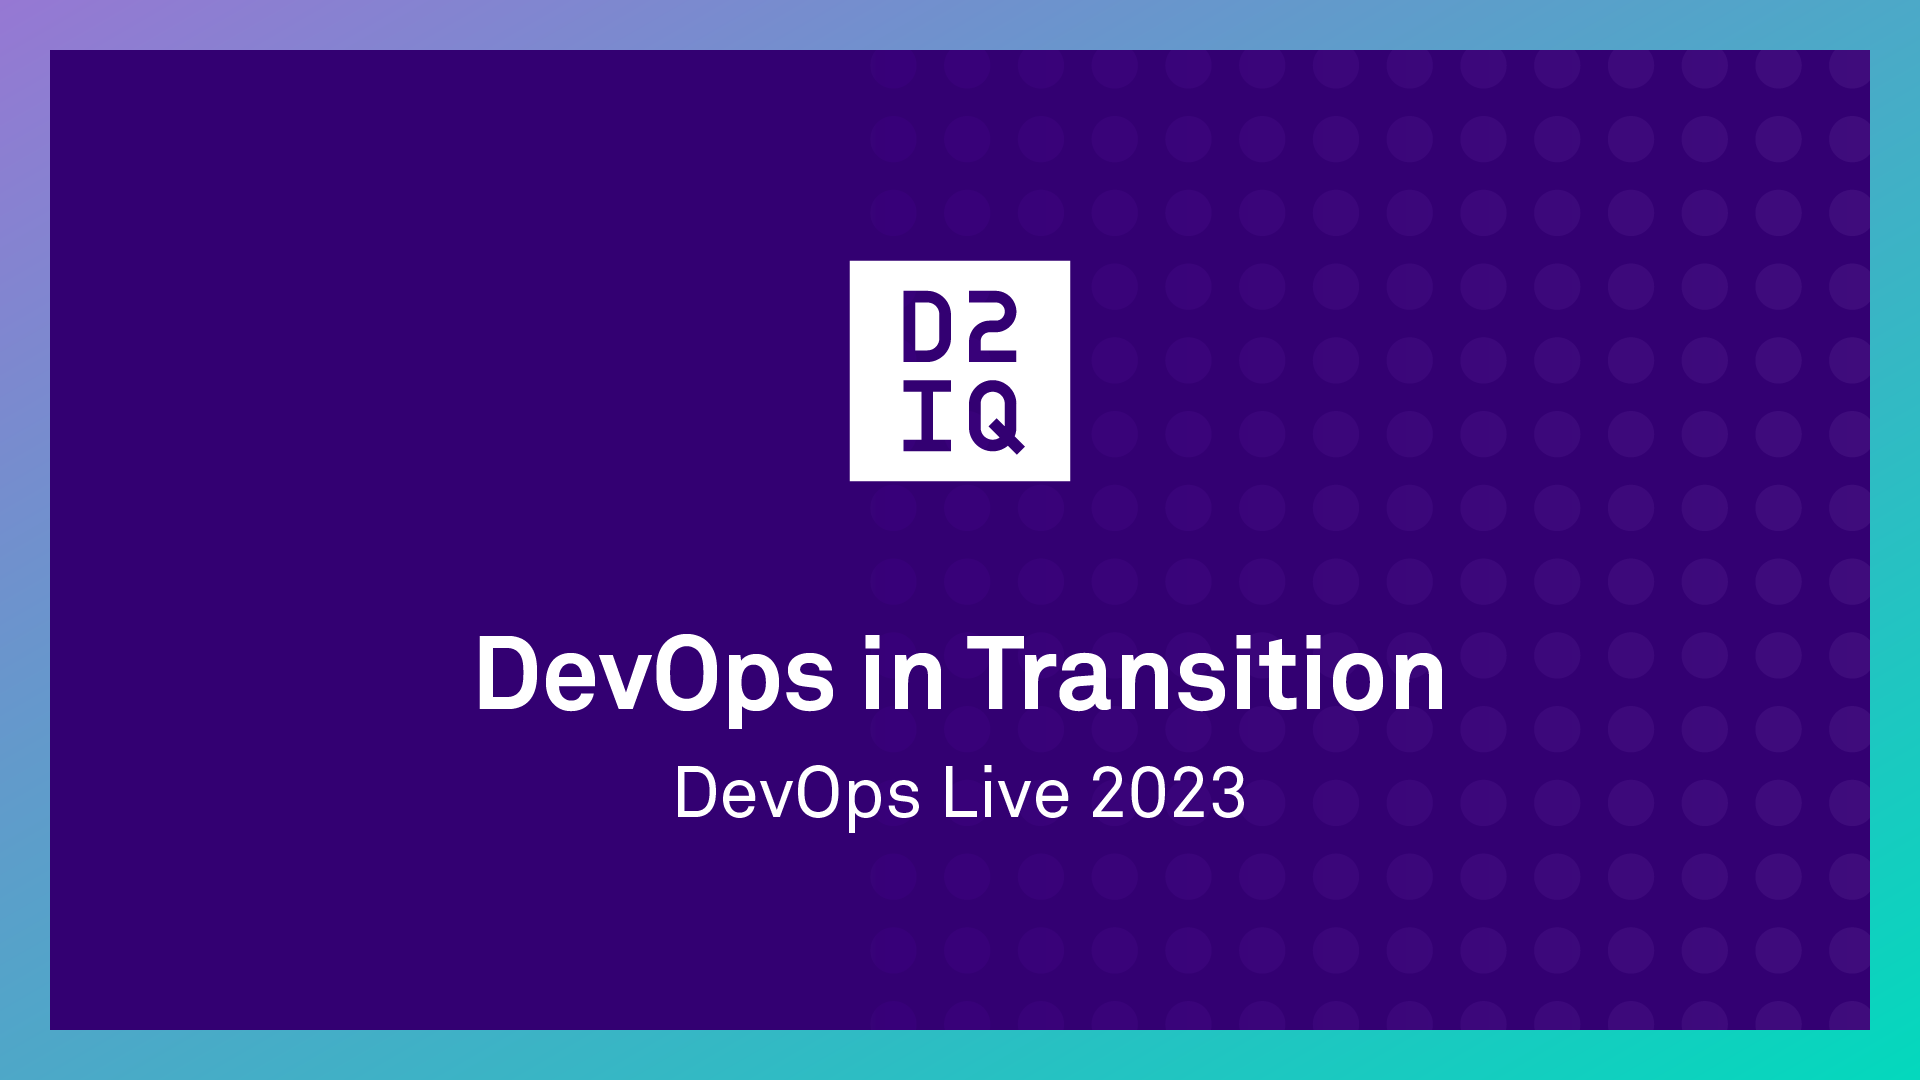 DevOps Live - DevOps in Transition